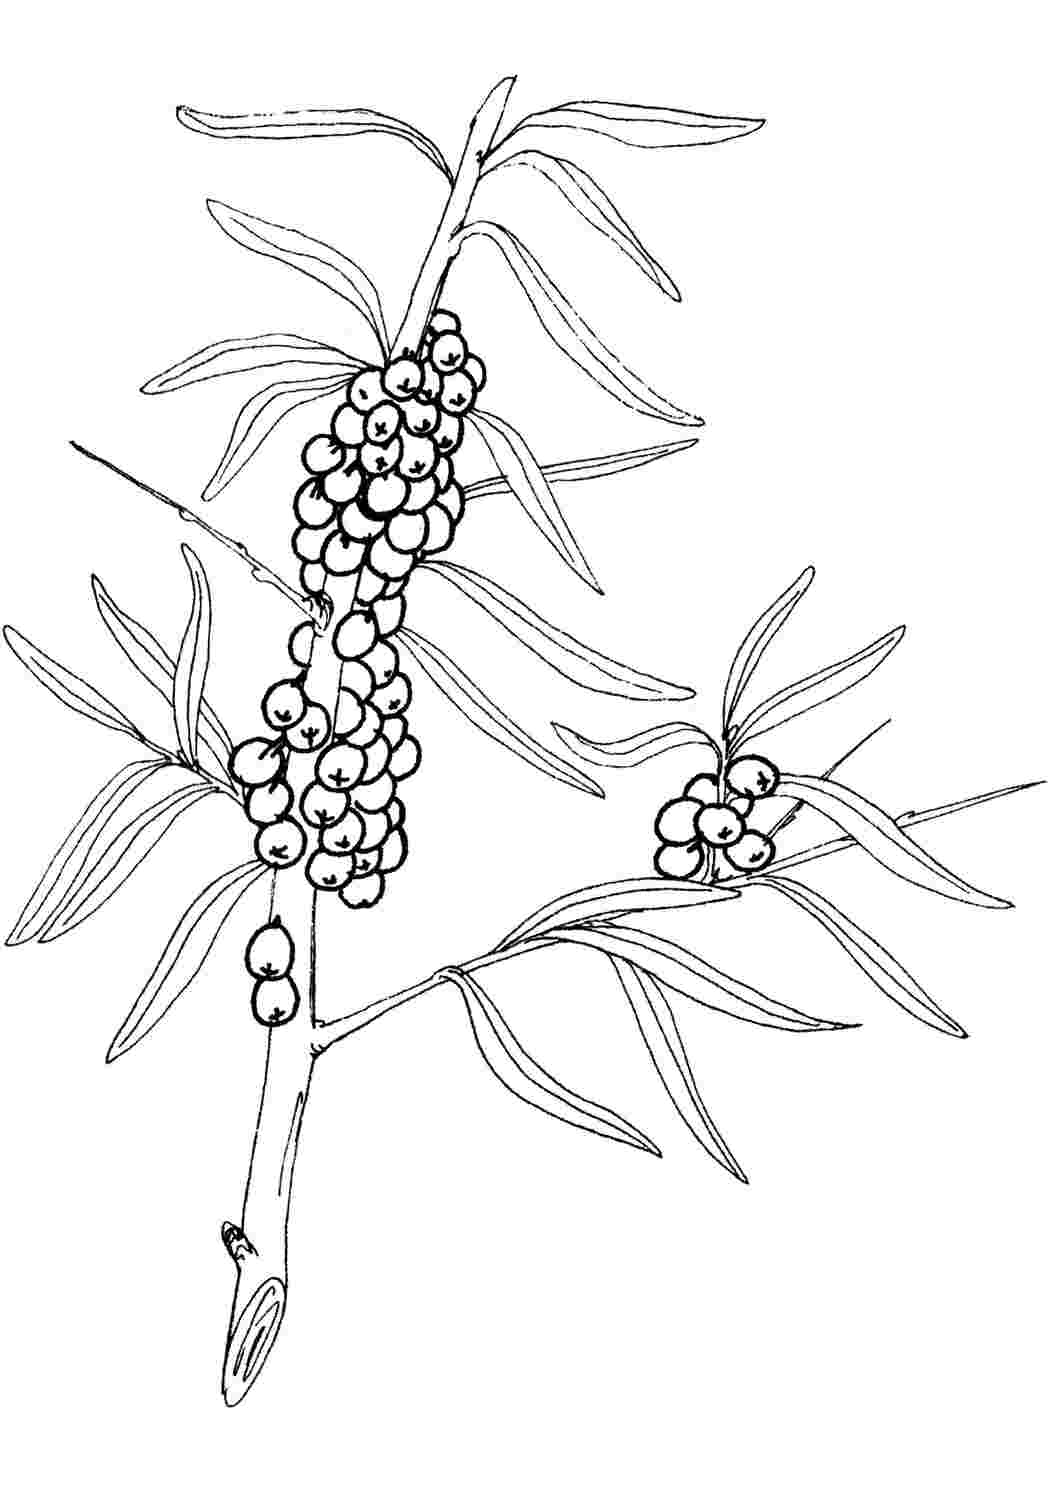 Раскраски Раскраски ягоды малина вишня арбуз вишня крыжовник  Облепиха